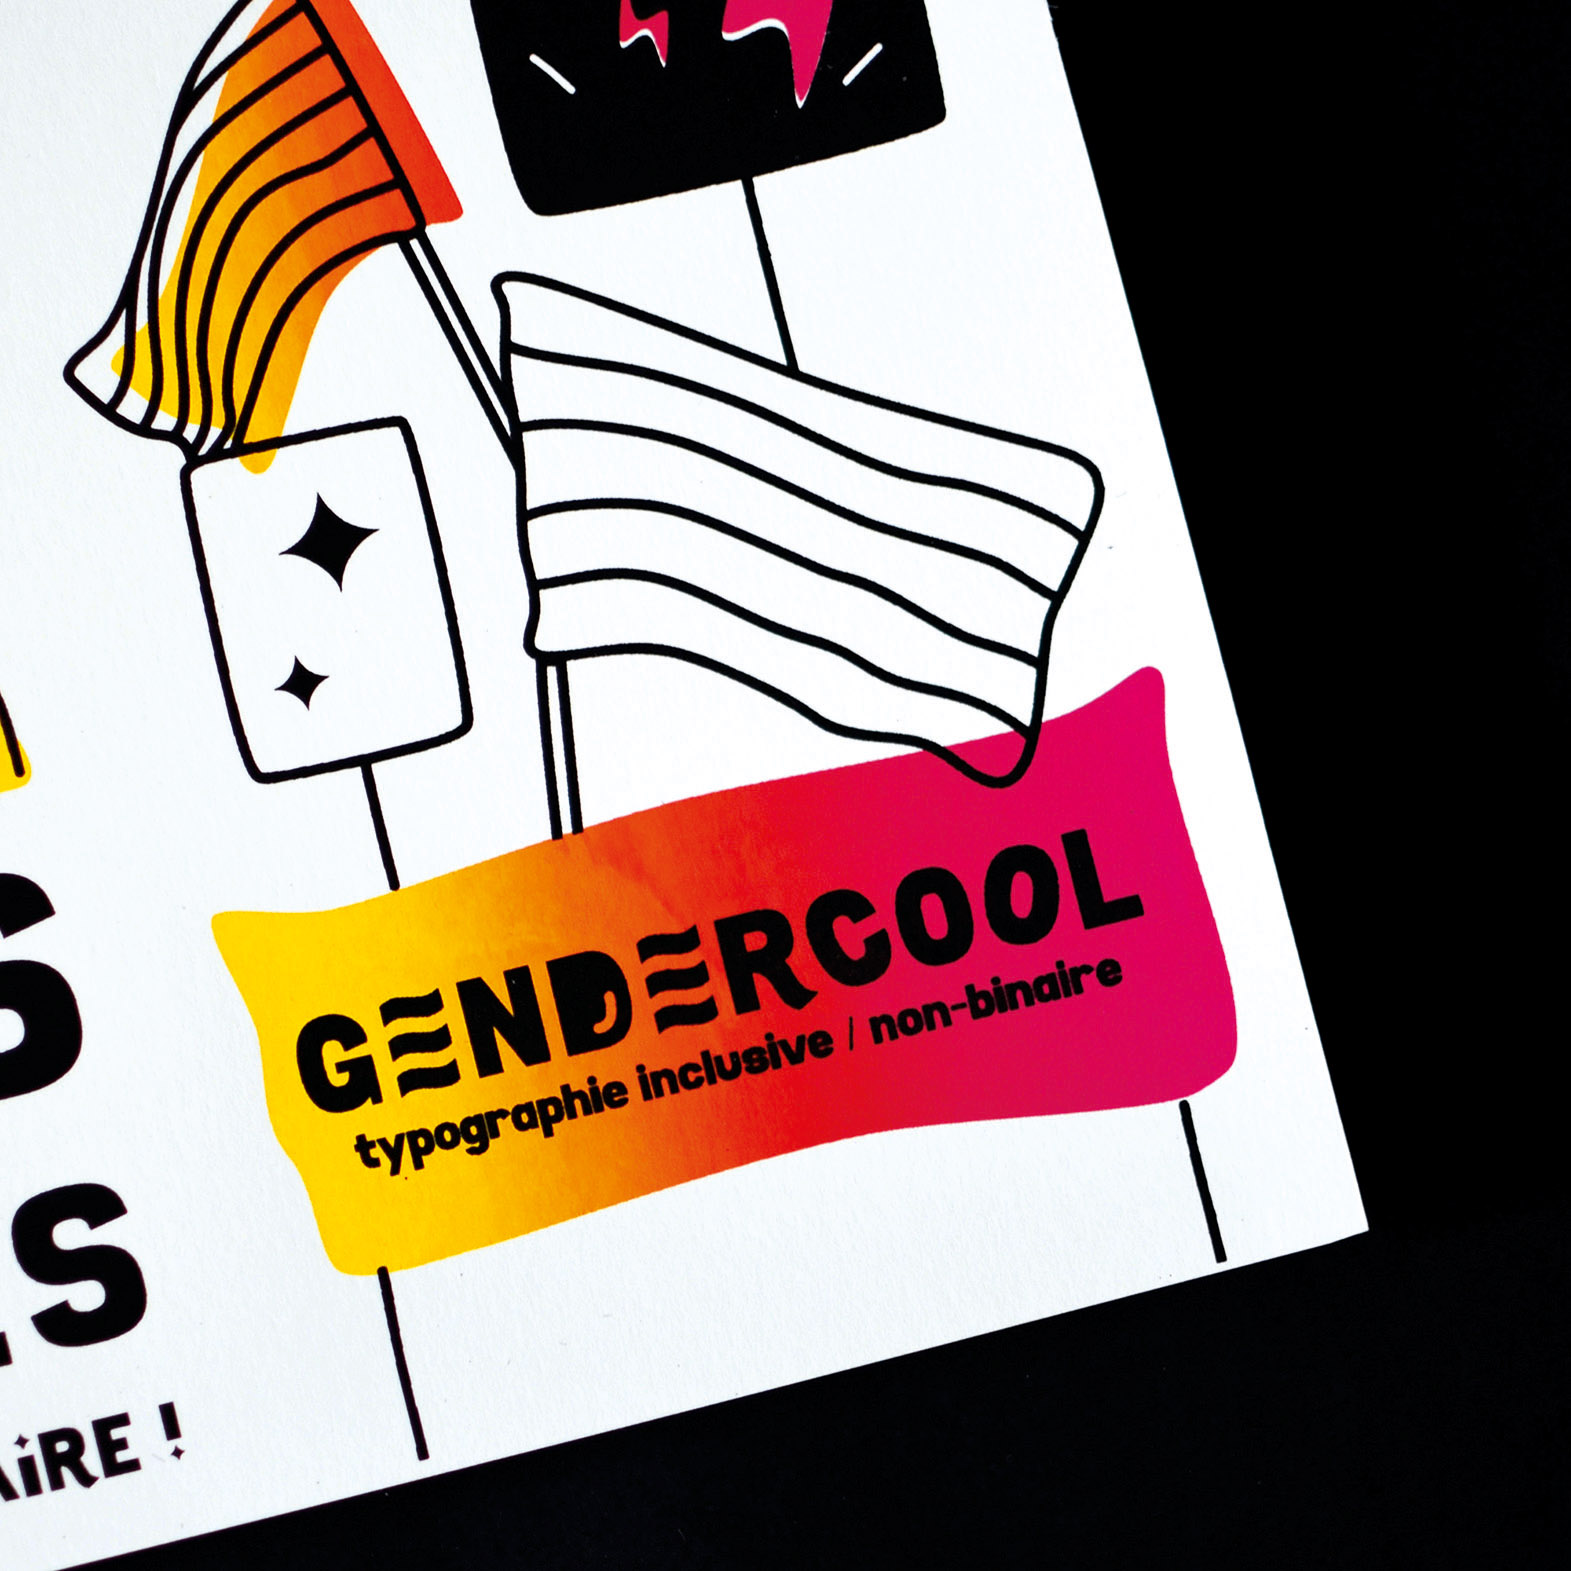 Détail de l'affiche Gendercool